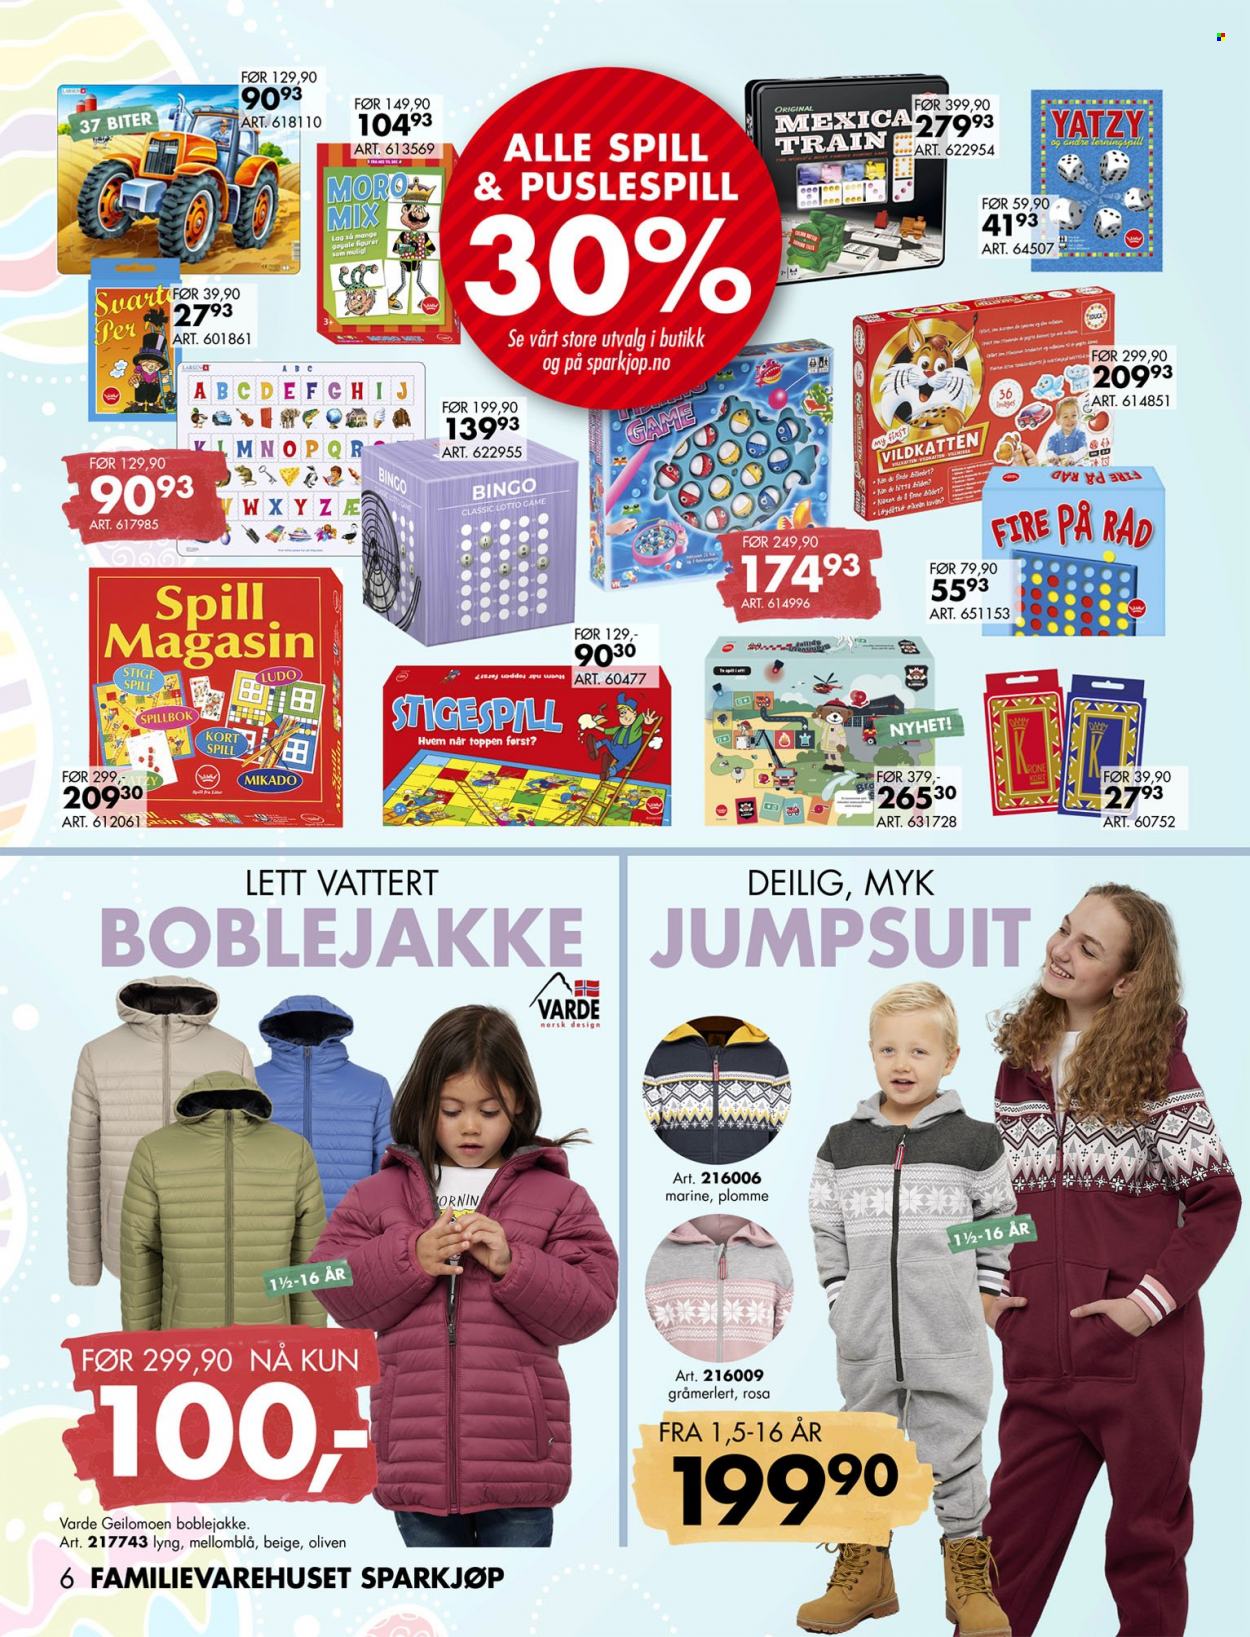 thumbnail - Kundeavis Sparkjøp - 20.3.2023 - 10.4.2023 - Produkter fra tilbudsaviser - figur, boblejakke, jumpsuit. Side 9.